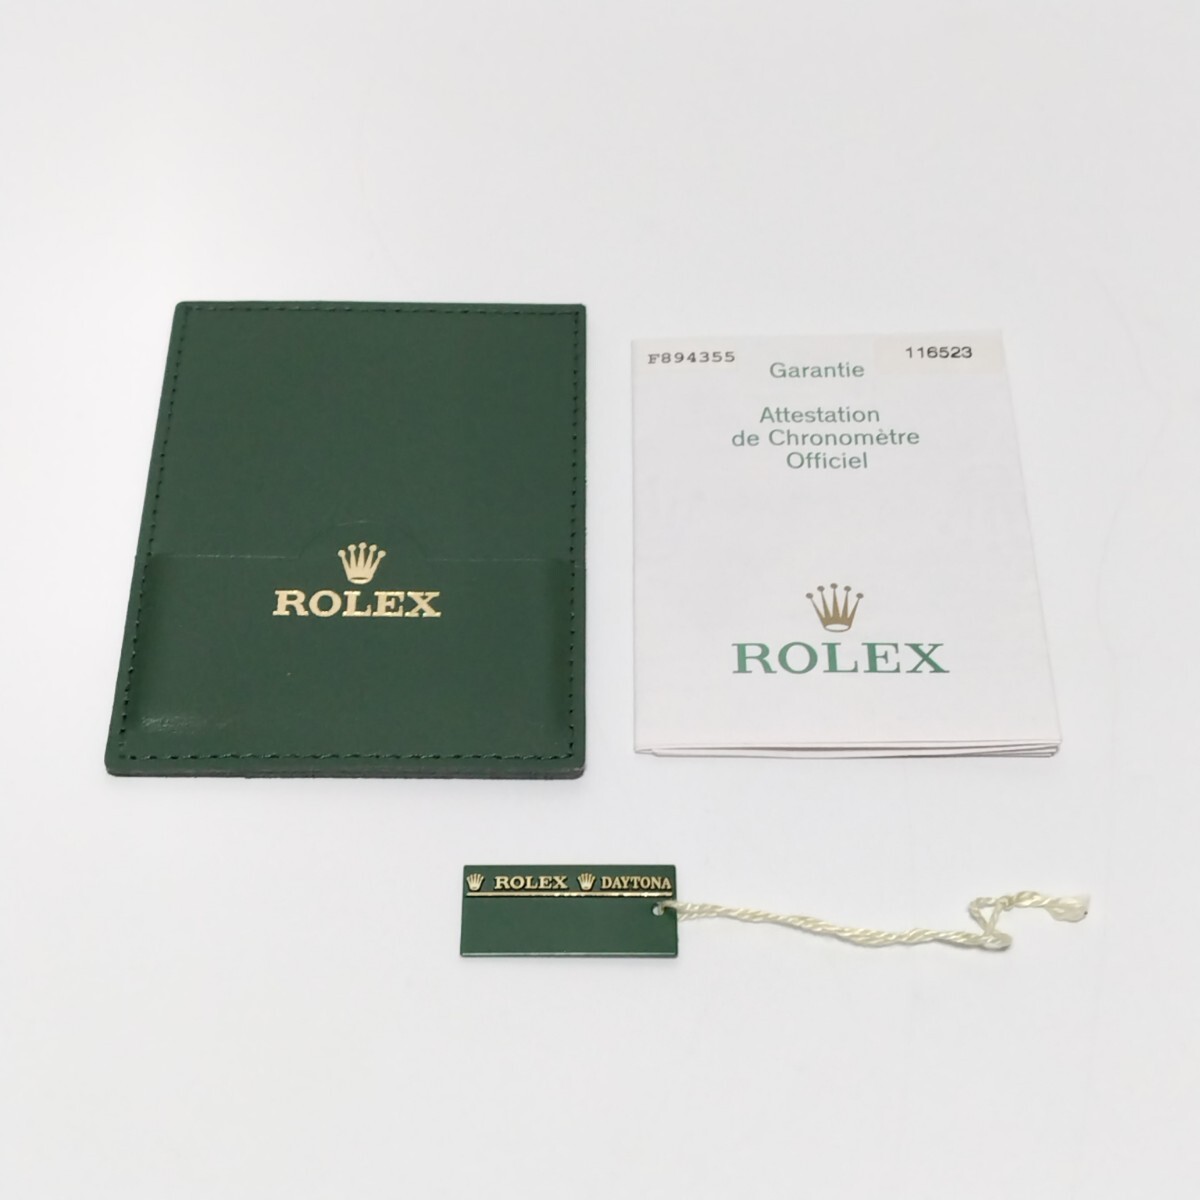 ROLEX ロレックス ギャランティ 116523 保証書 カードケース デイトナ DAYTONA A-52301_画像1